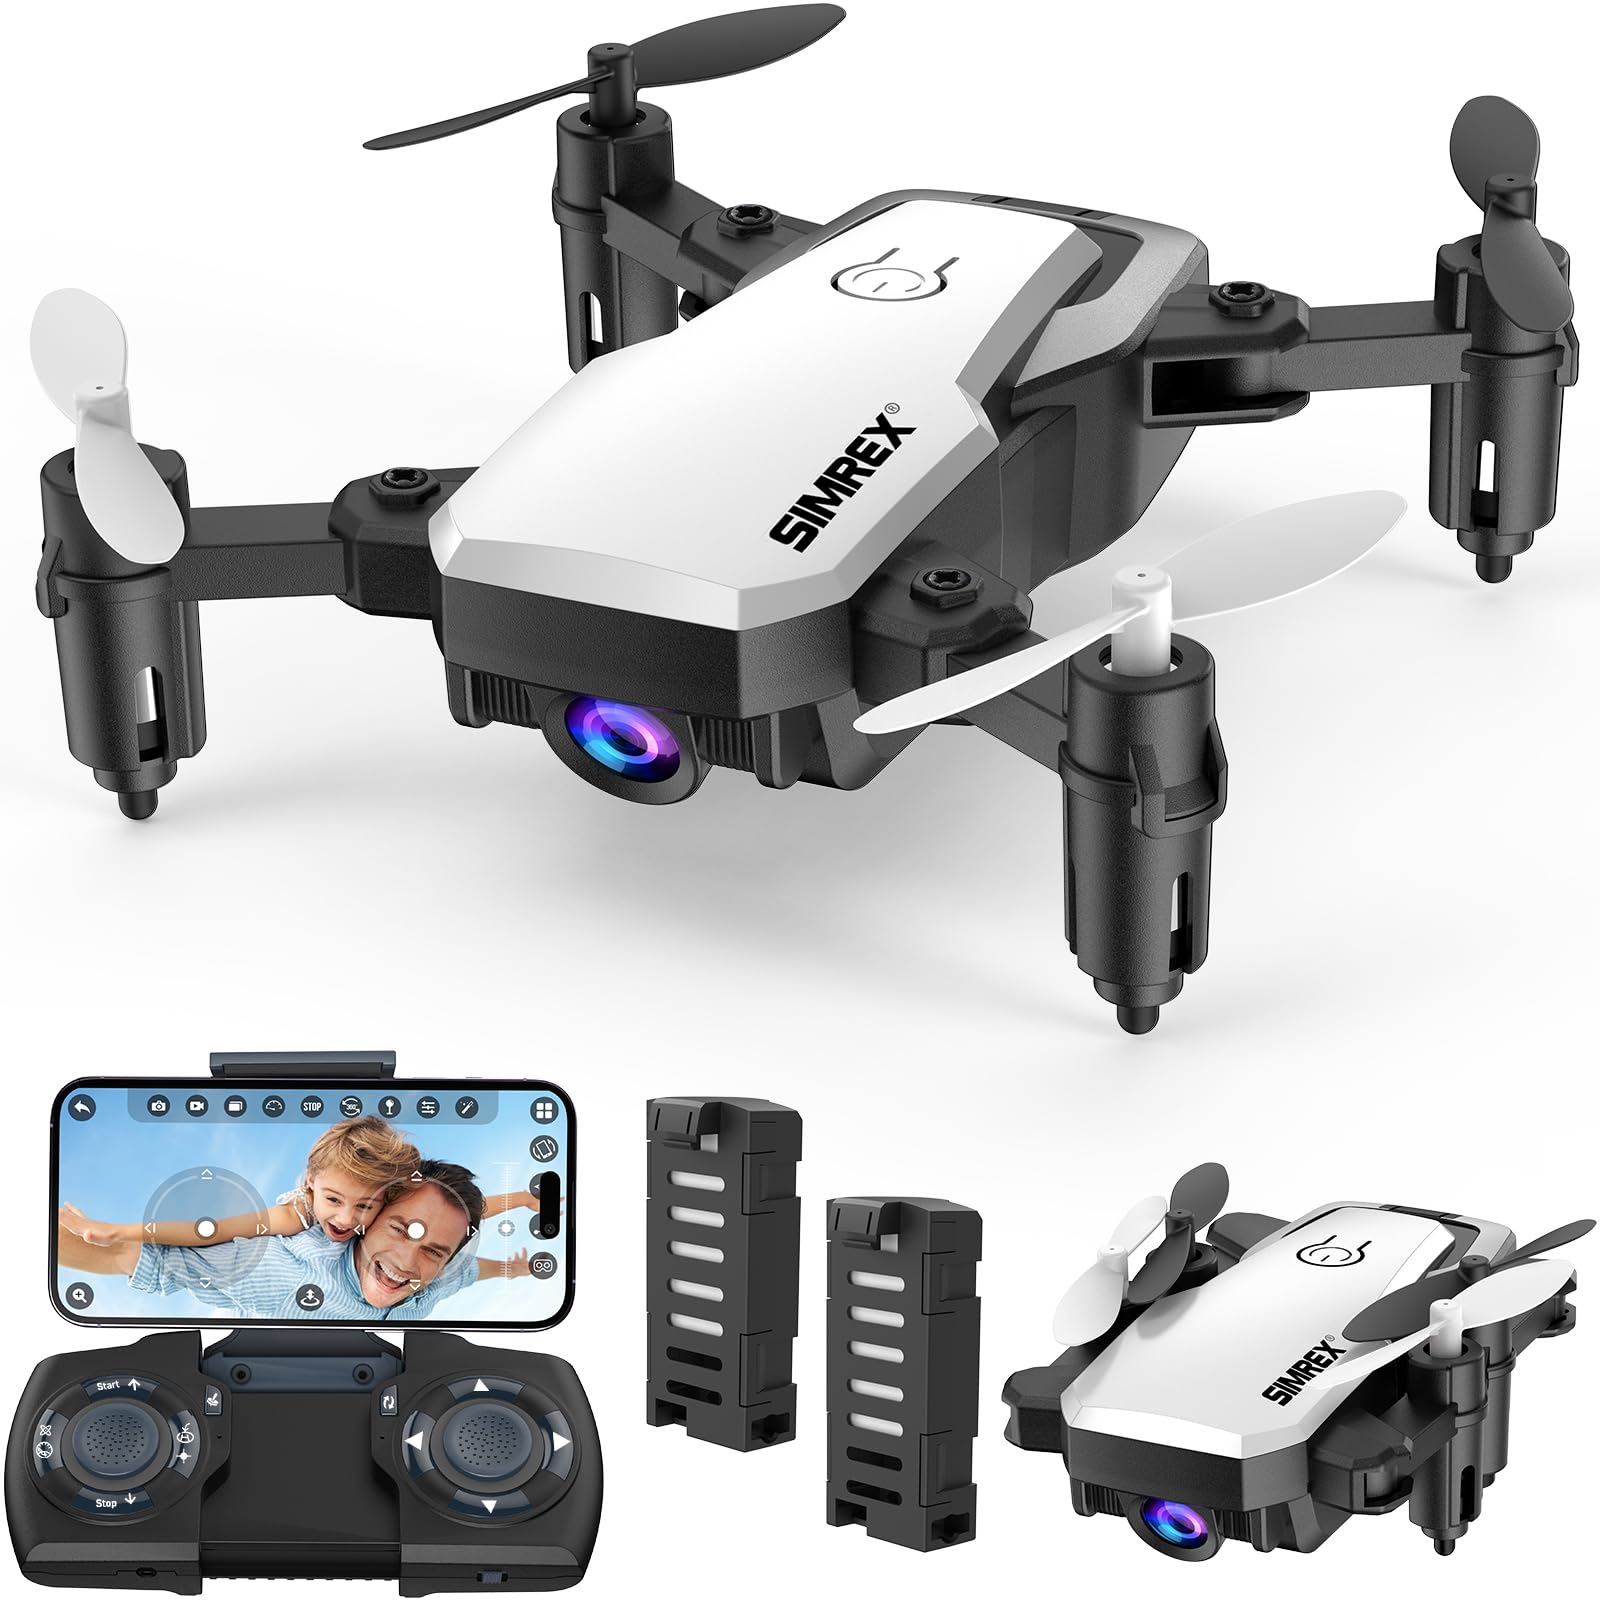 SIMREX X300C Mini Drohne mit Kamera 720P HD FPV, RC Quadcopter faltbar, Höhenhaltung, 3D-Flip, Headless-Modus, Schwerkraftkontrolle und 2 Batterien, Geschenke für Kinder, Erwachsene, Anfänger, Weiß